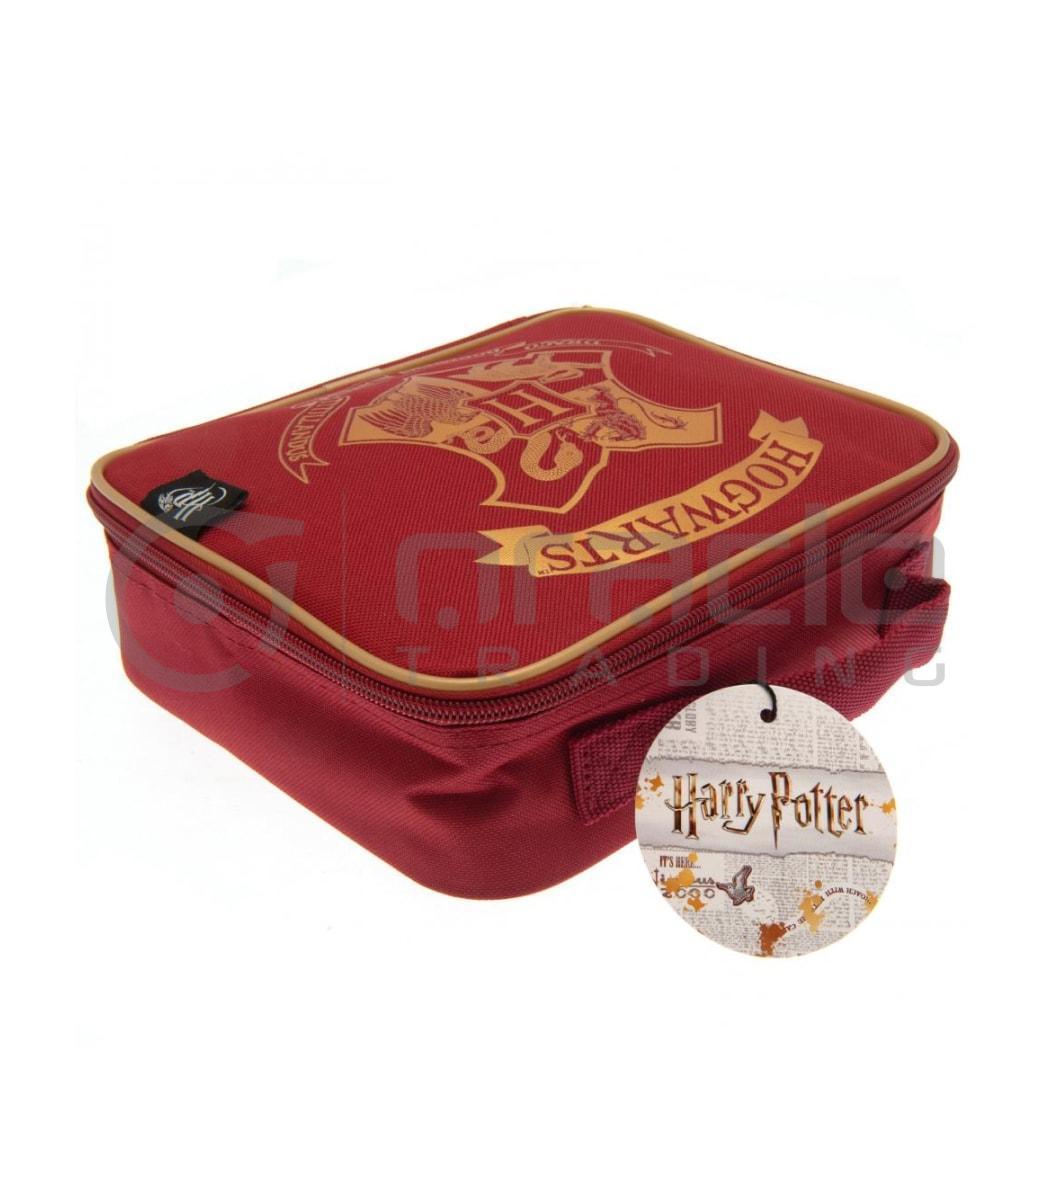 harry potter lunch bag hogwarts red hpx042 b